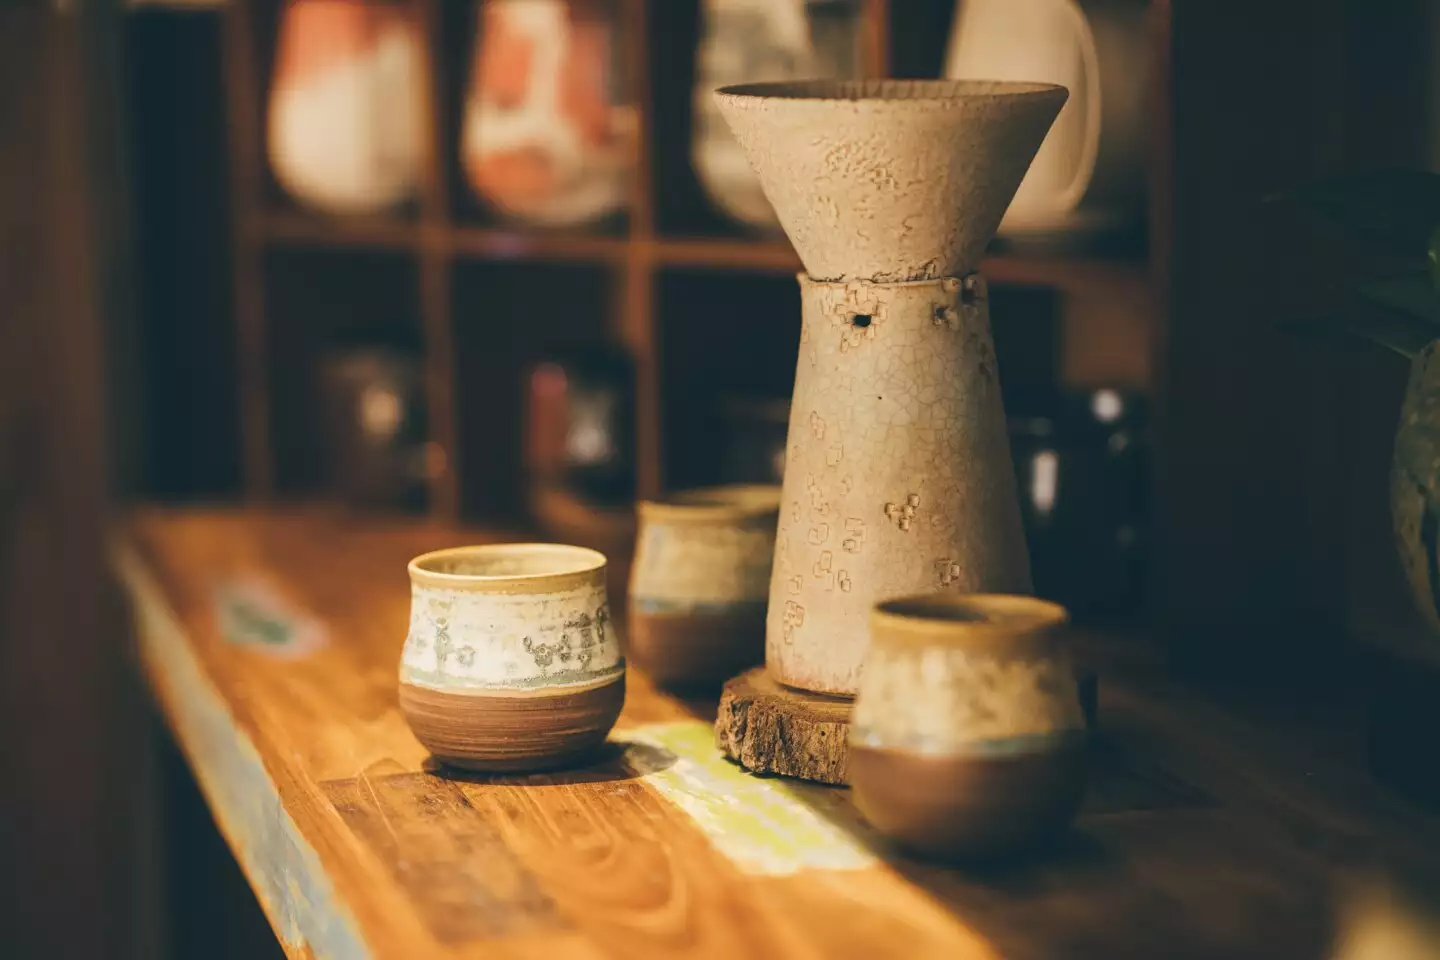 愚哲陶藝工作室除了販售陶器，也提供陶藝體驗、教學等課程。